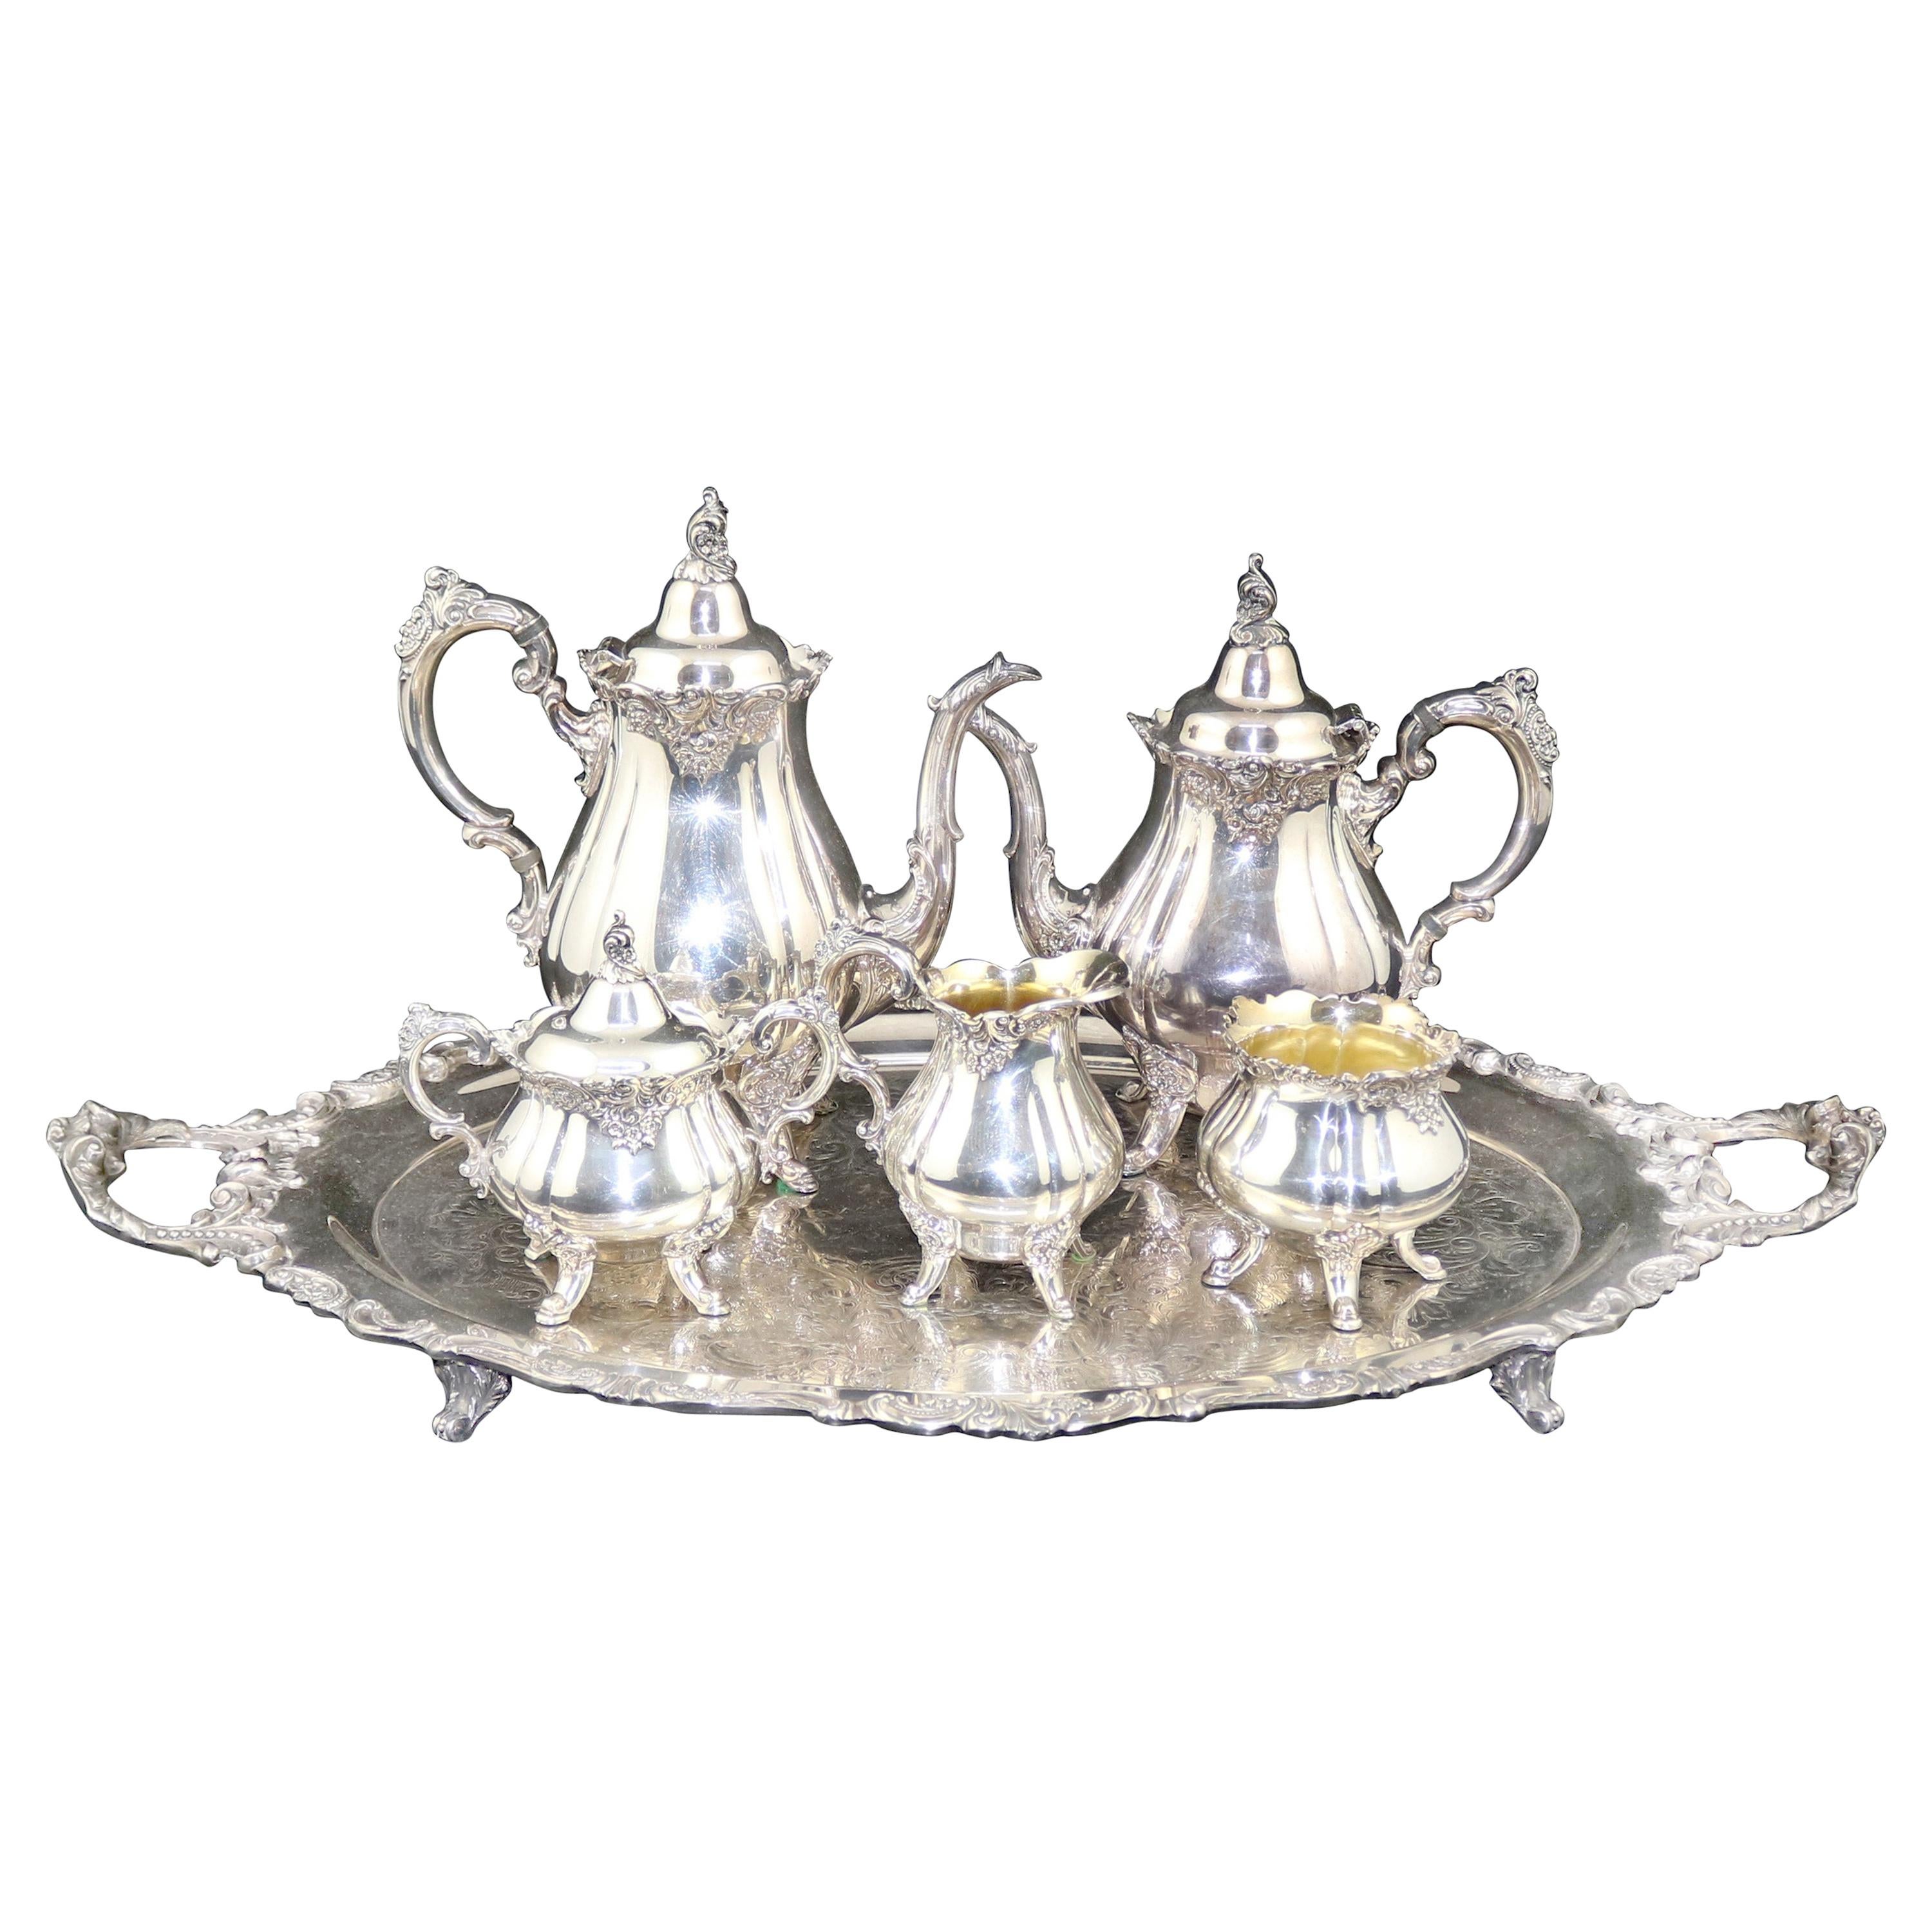 Antique 6-Piece "Baroque" Silver Plate Tea Set by Wallace, circa 1890